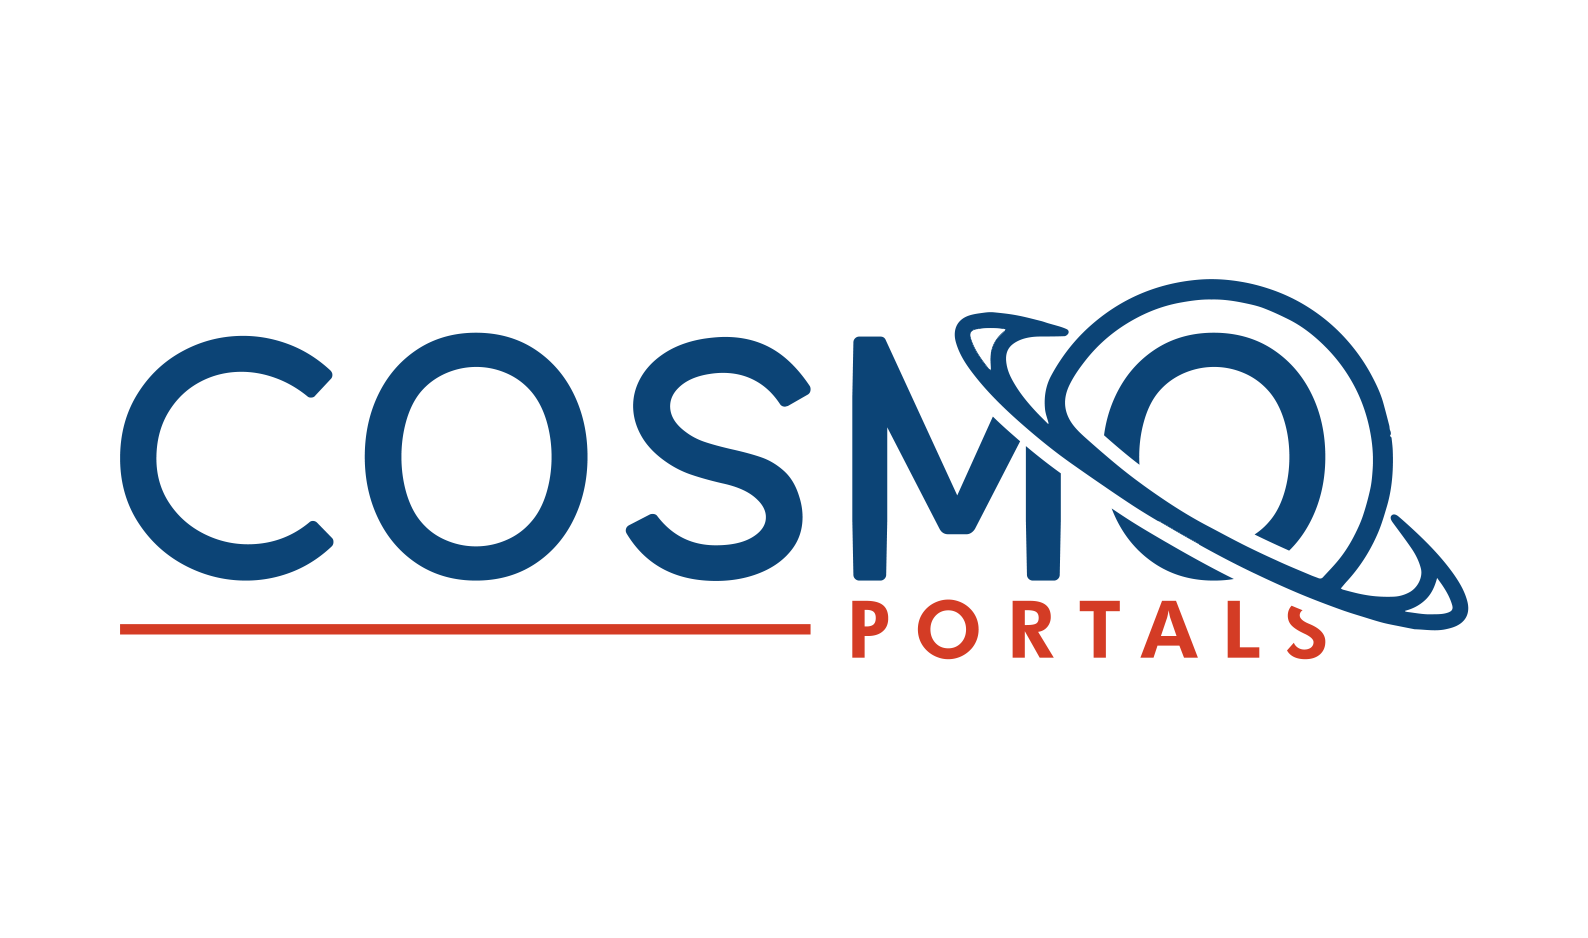 Cosmo Portals